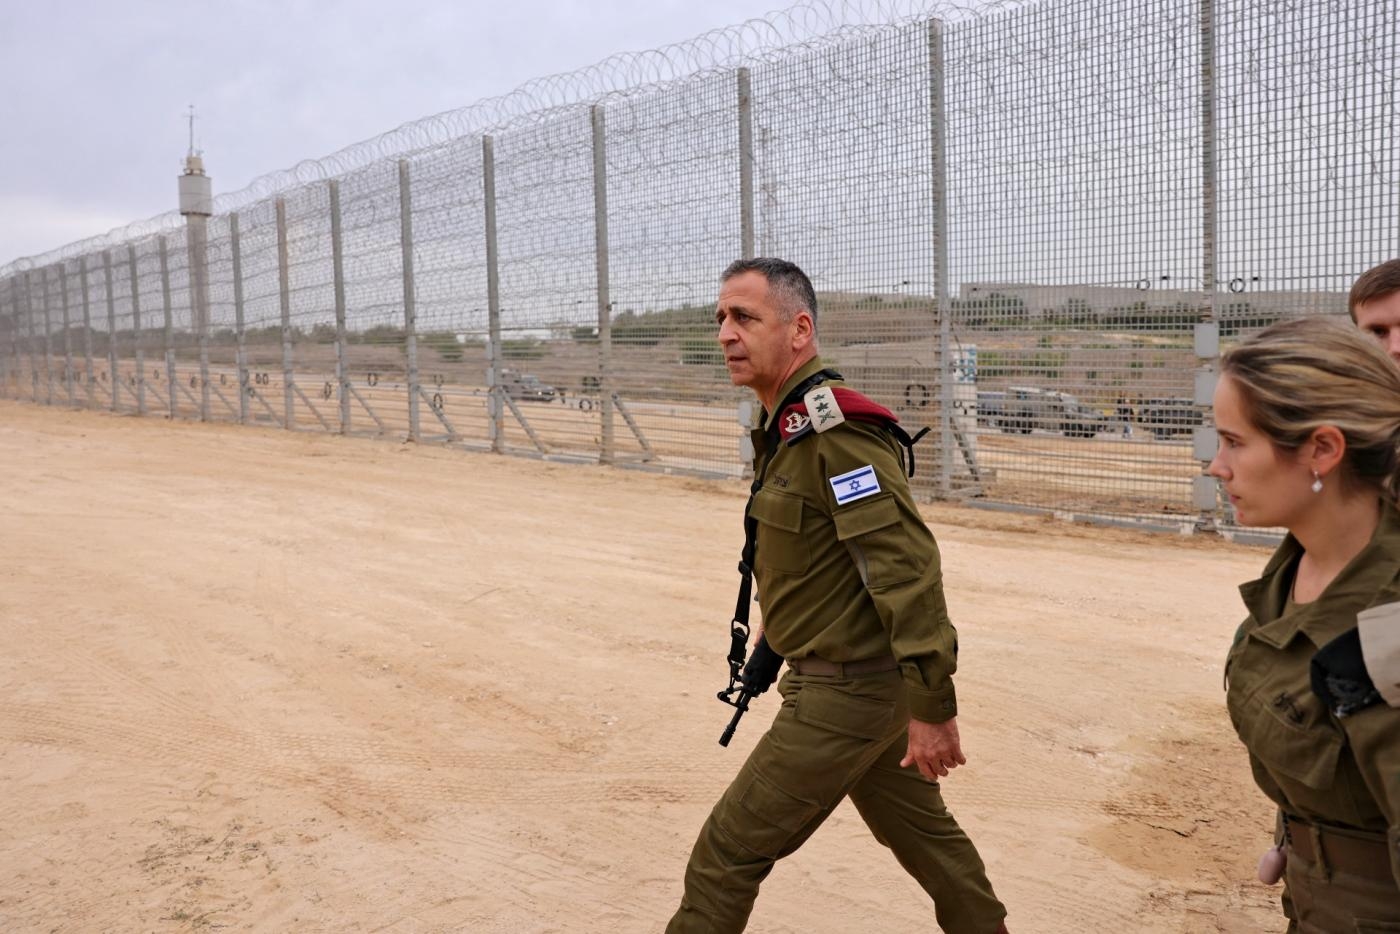 Gaza : ce que le mur de fer construit par Israël signifie pour les Palestiniens assiégé - Aviv Kochavi, chef d’état-major de l’armée israélienne, passe devant une clôture le long de la frontière avec la bande de Gaza le 7 décembre, à l’occasion d’un événement marquant la fin de la construction d’une barrière entourant totalement l’enclave palestinienne (AFP)